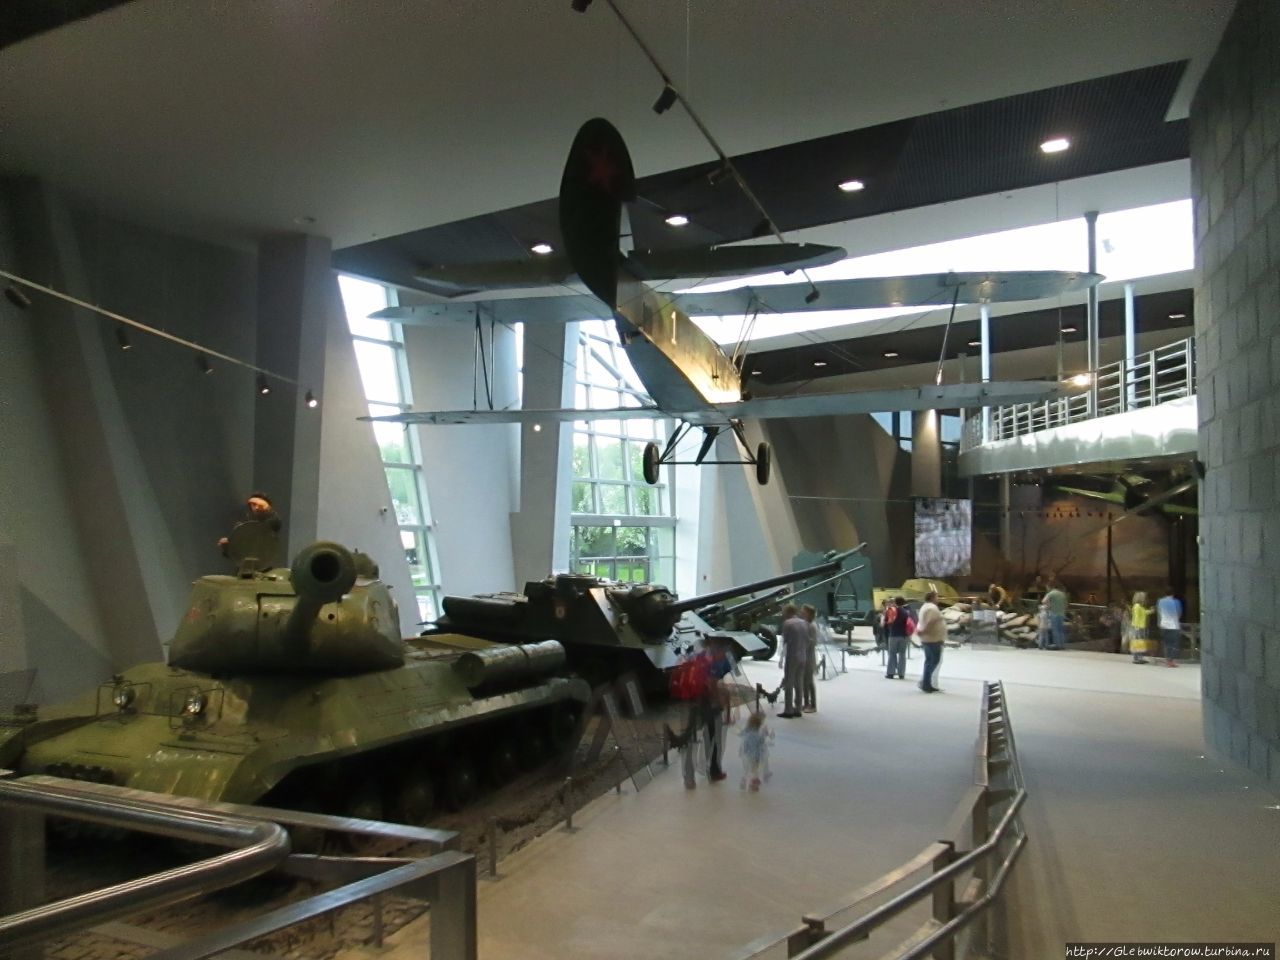 Посещение нового музея Великой Отечественной в День Победы Минск, Беларусь